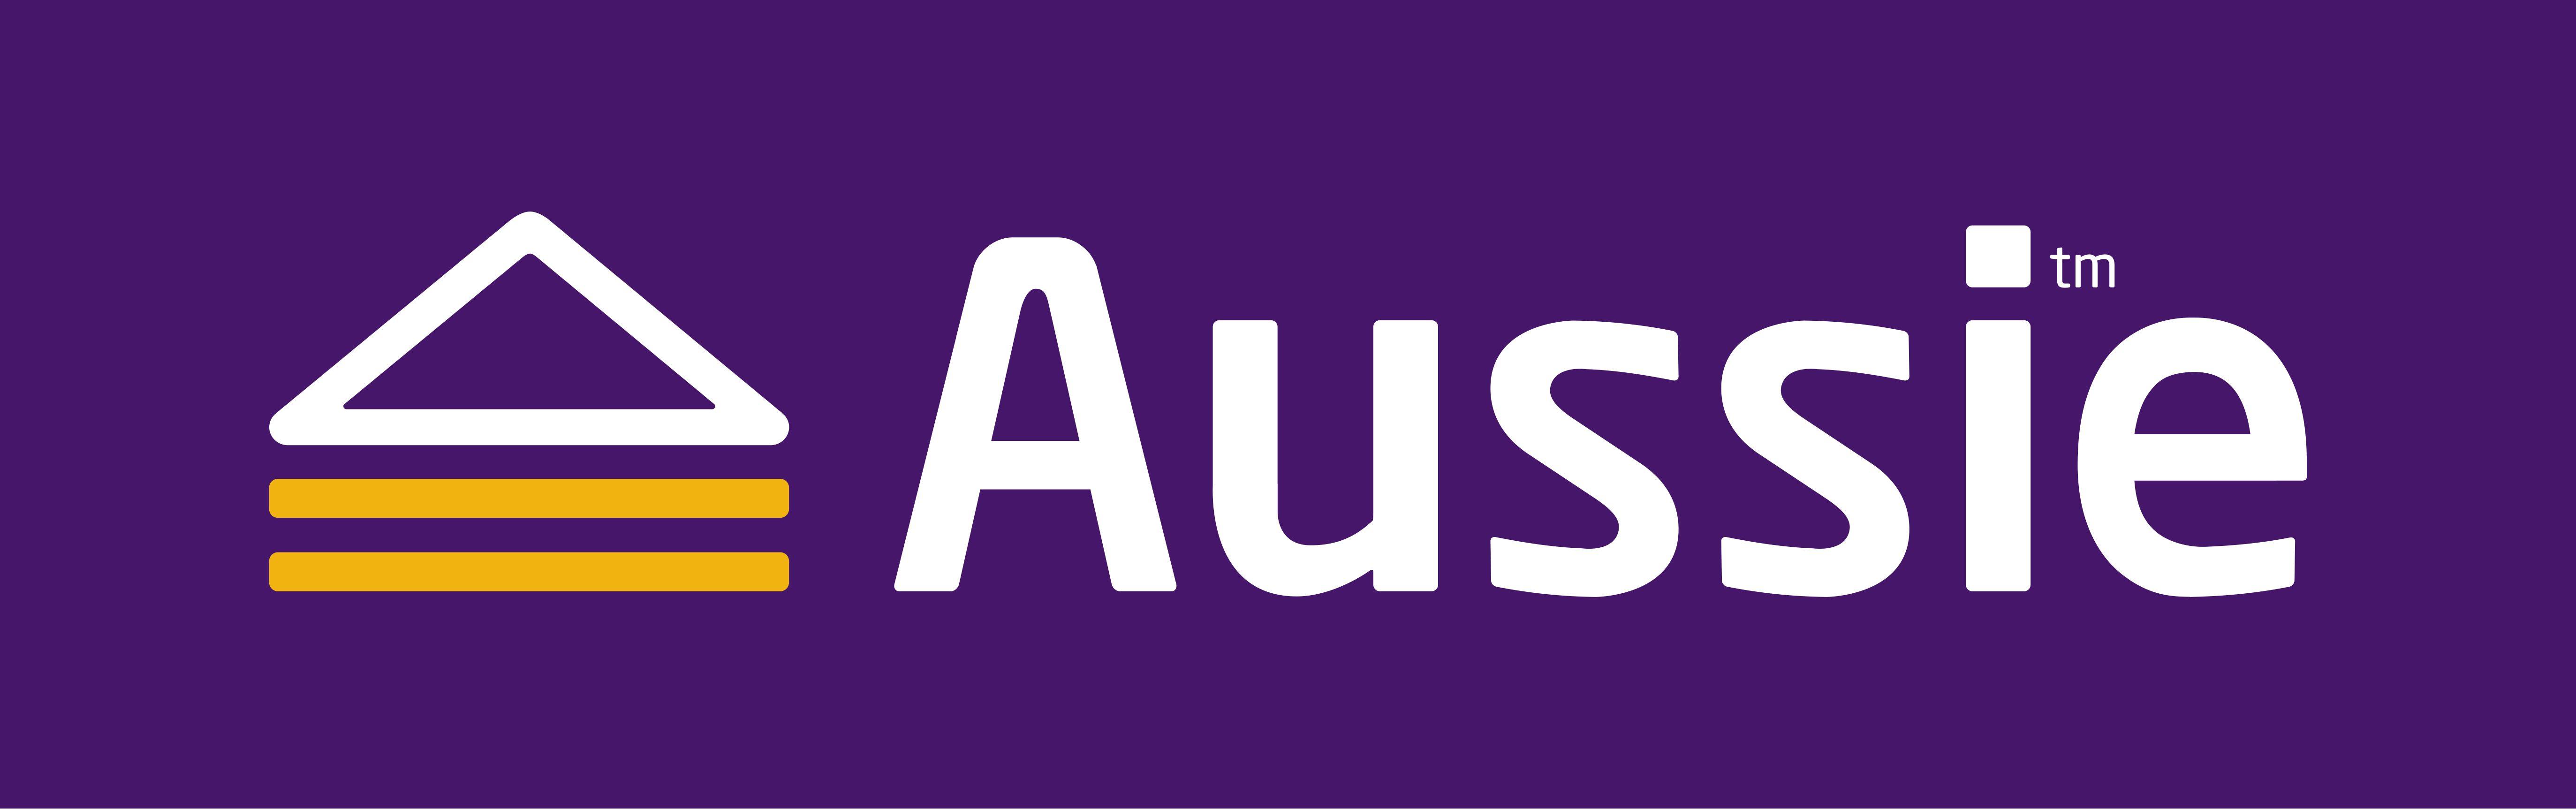 Aussie Logo - Aussie Logo High Res